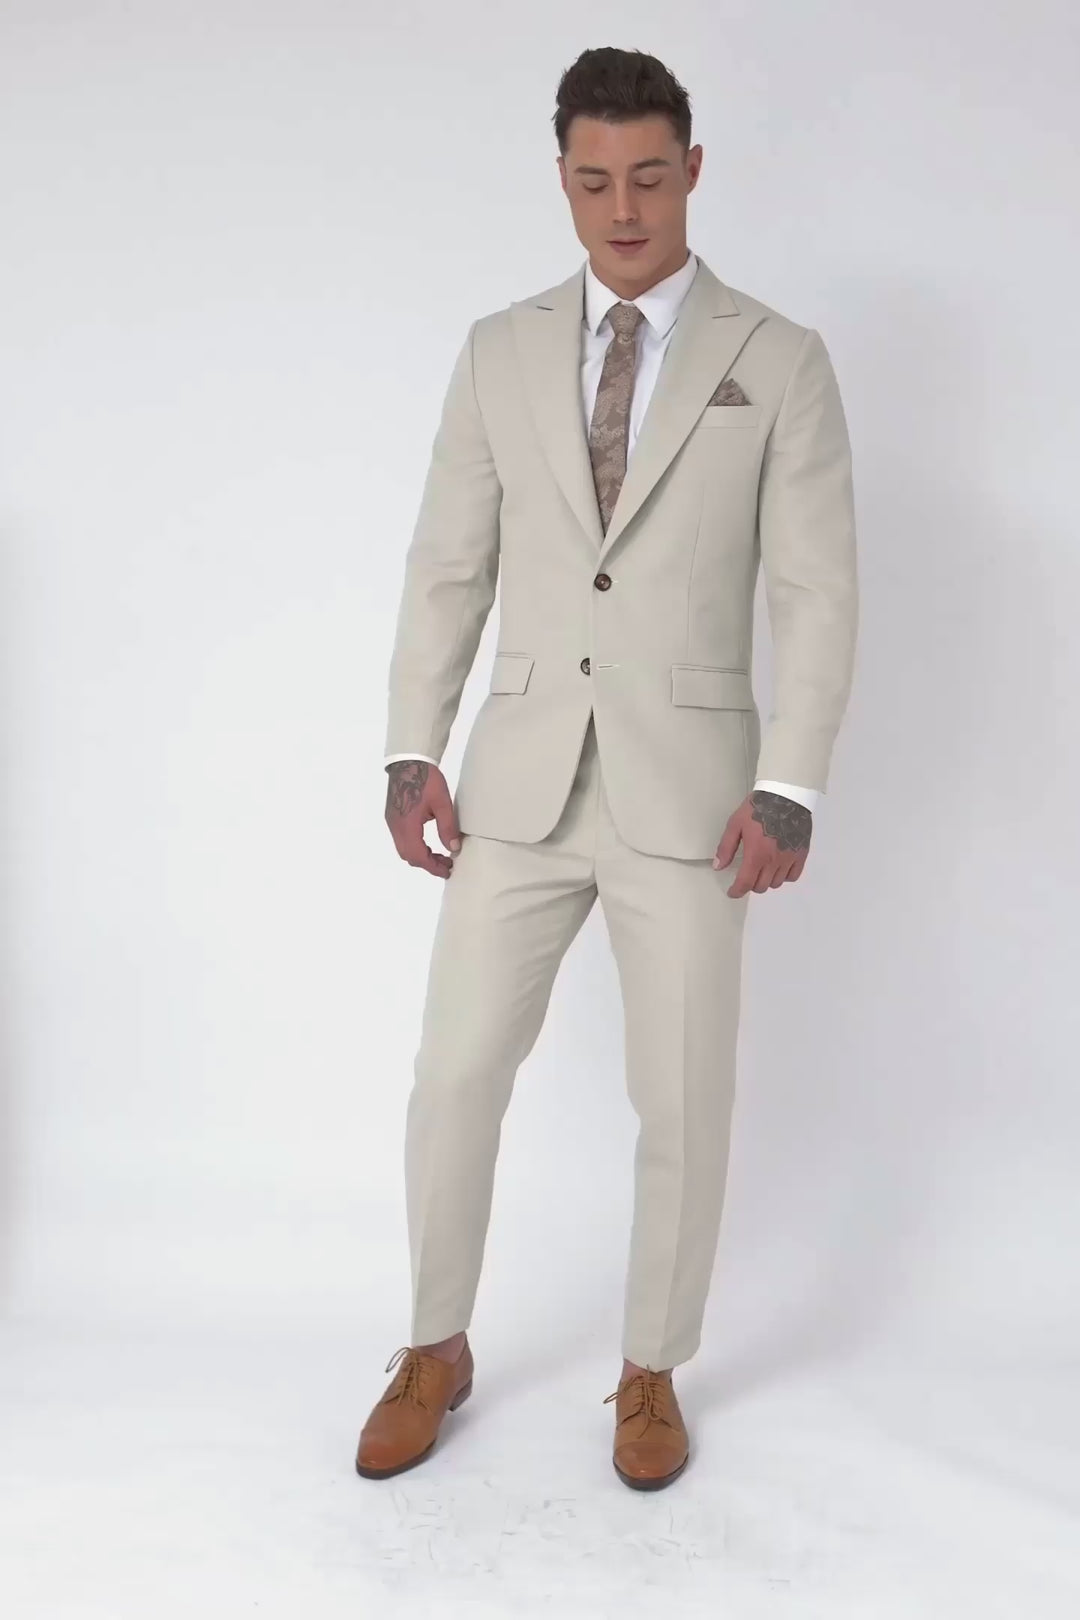 Hudson Ivory Cotton Suit